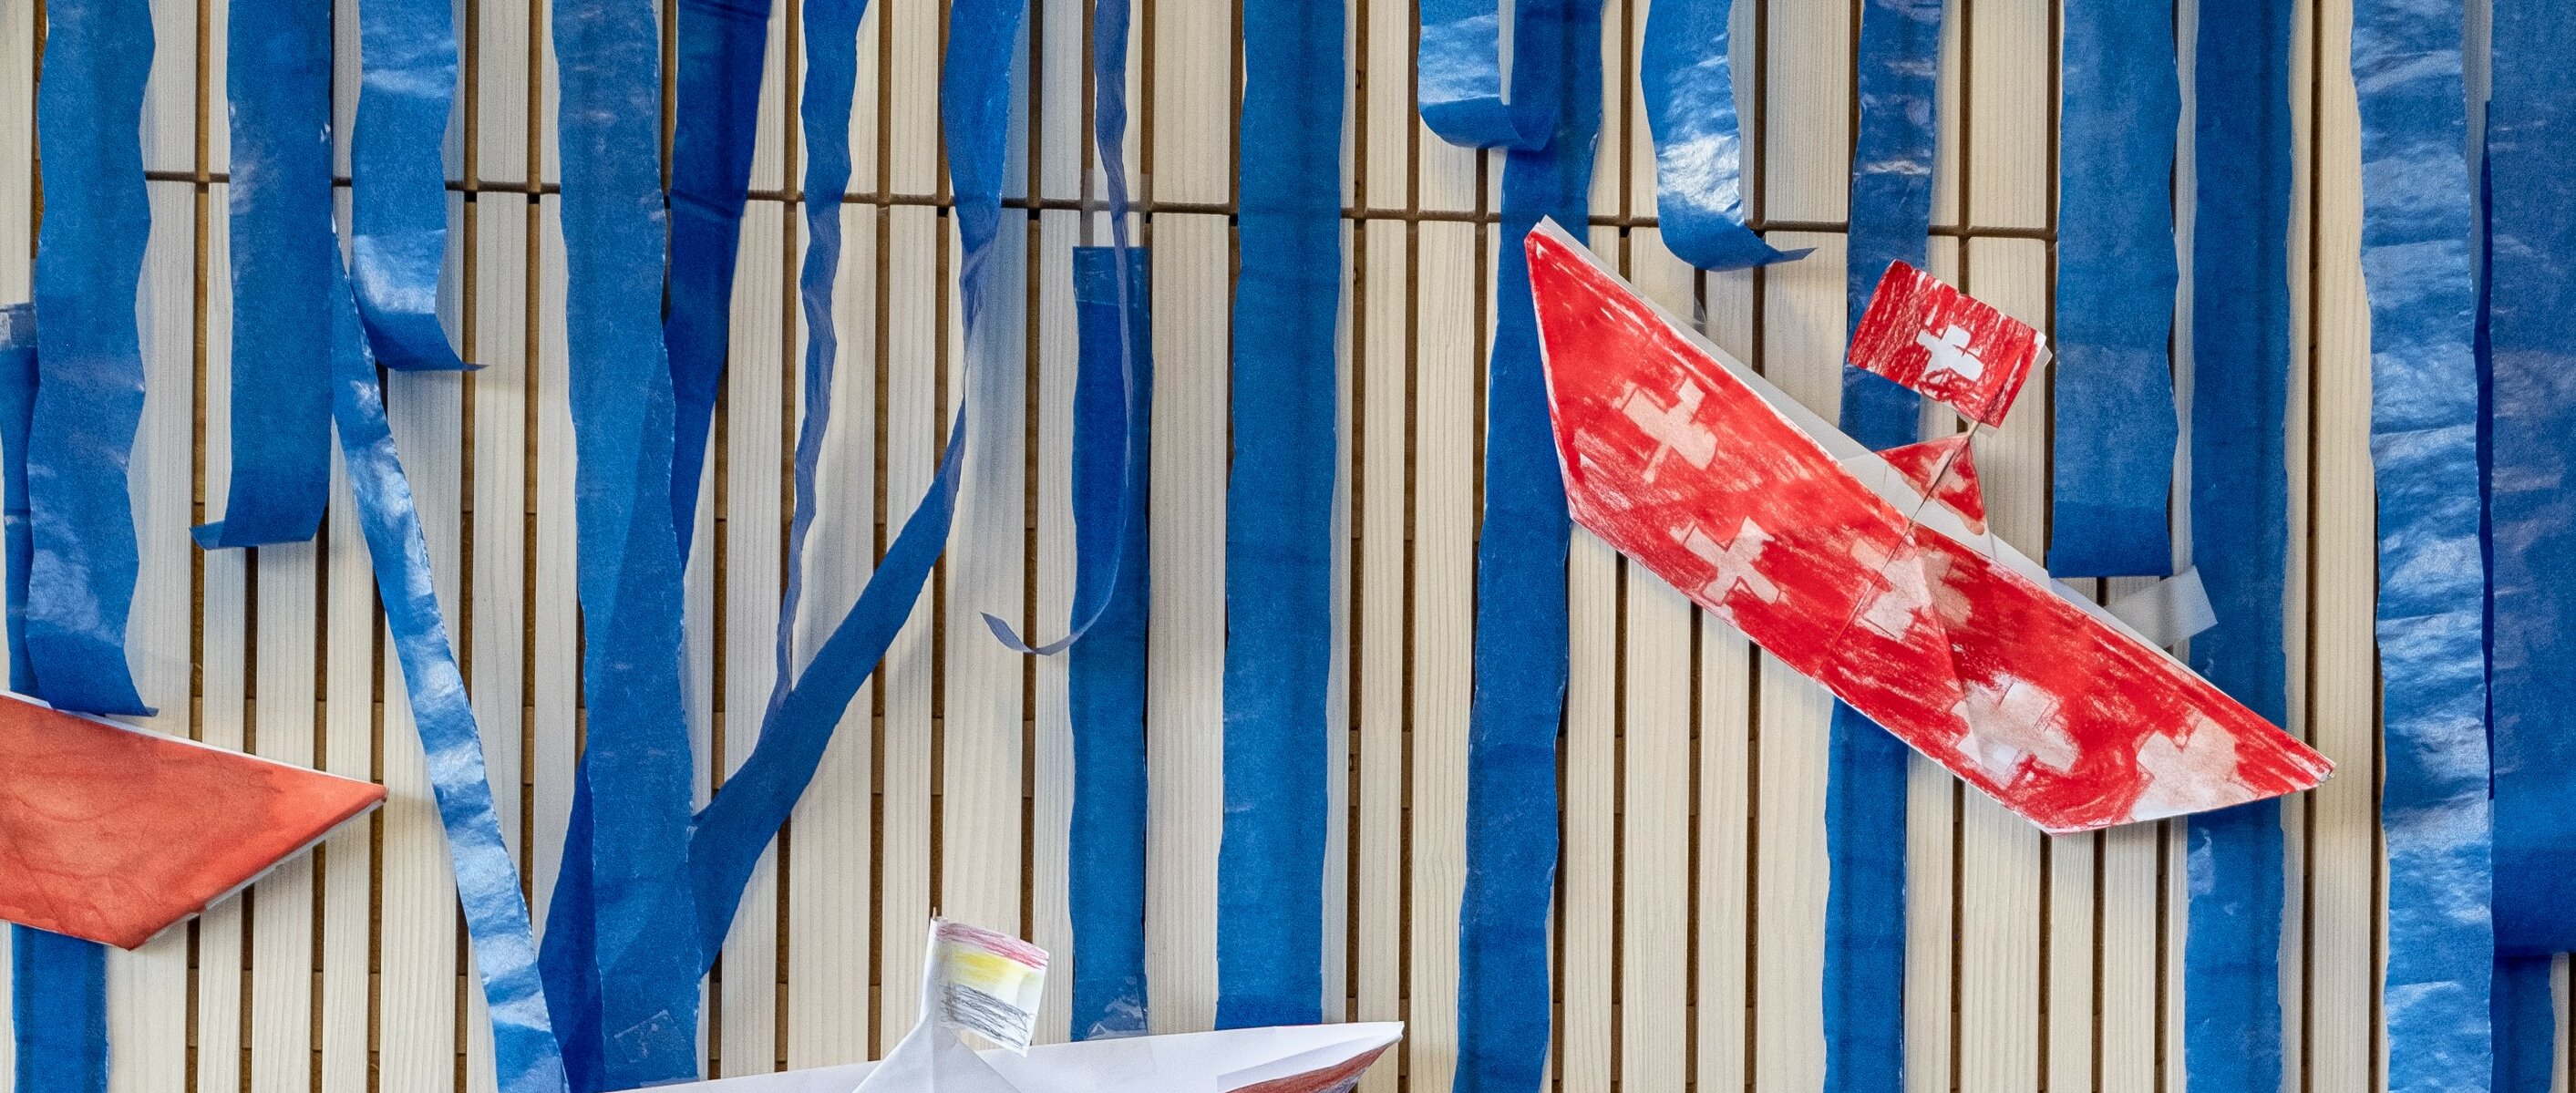 Selbst gebastelte, angemalte Papierboote hängen als Dekoration an der Wand. Eines der Boote ist mit der Schweizer Flagge bemalt.